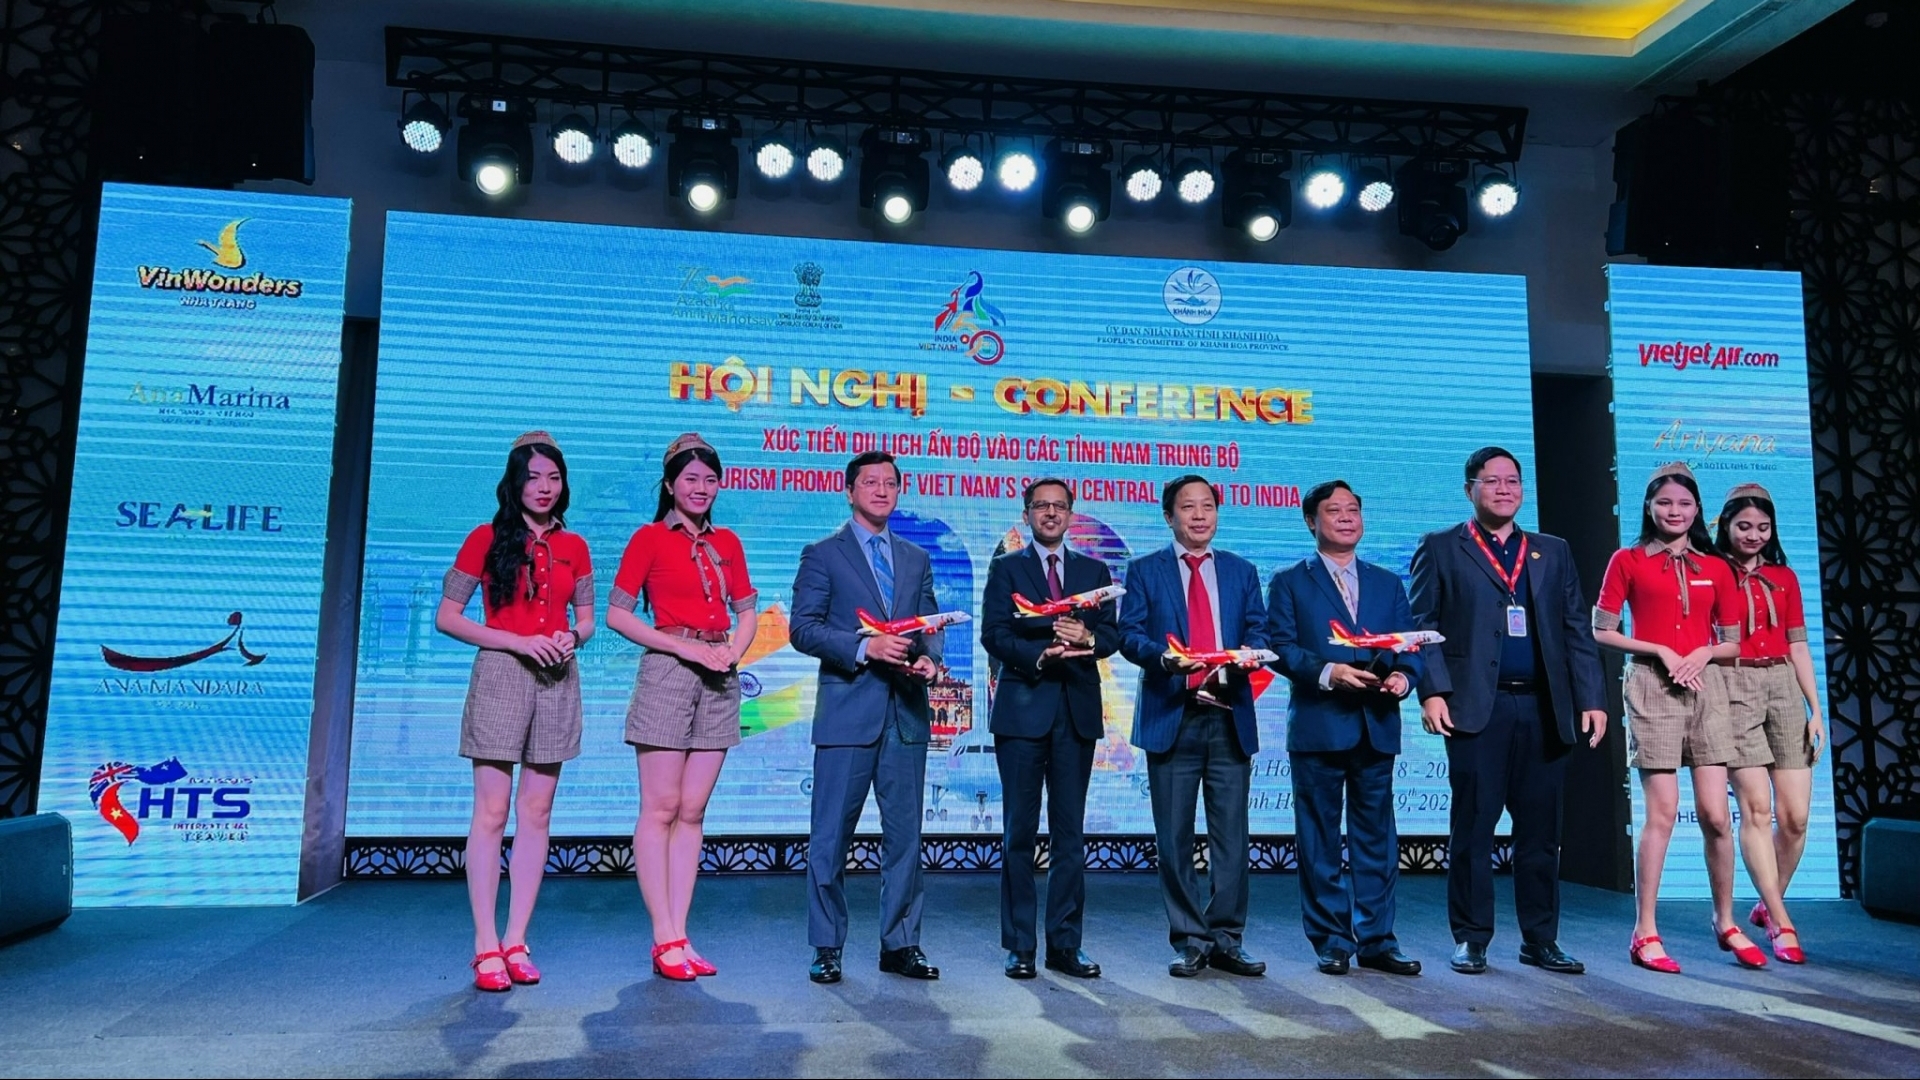 印度与越南南中部地区的旅游促进会议在芽庄市举行